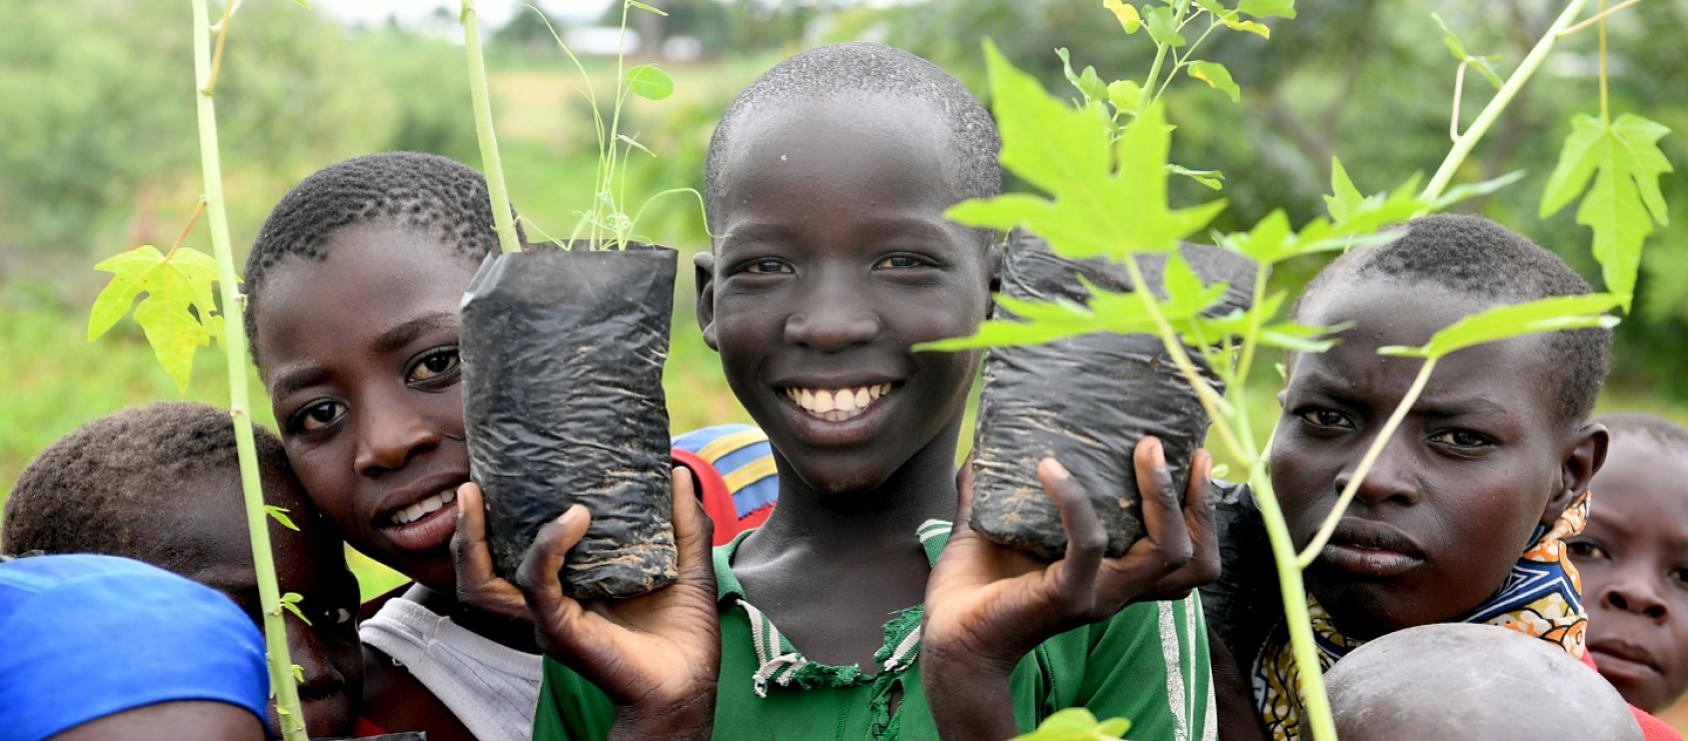 Gros plan sur des enfants tenant de jeunes plants dans les mains et regardent l'objectif avec un grand sourire.